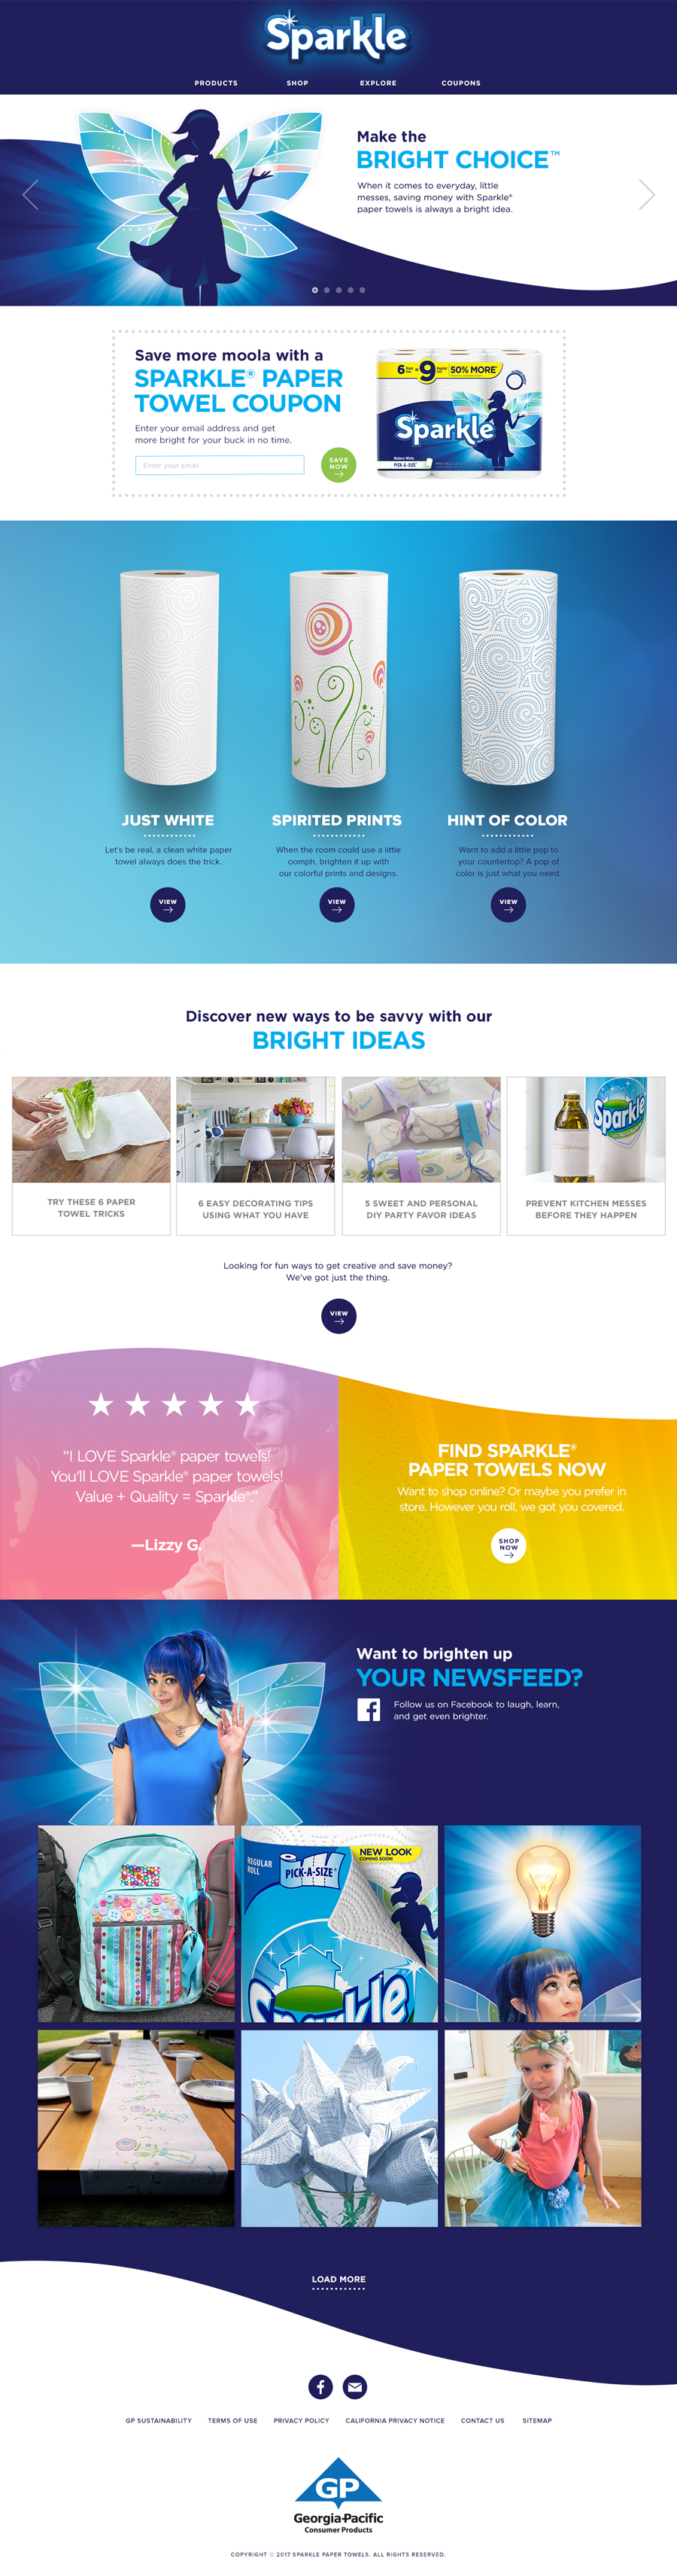 Sparkle paper towels website design